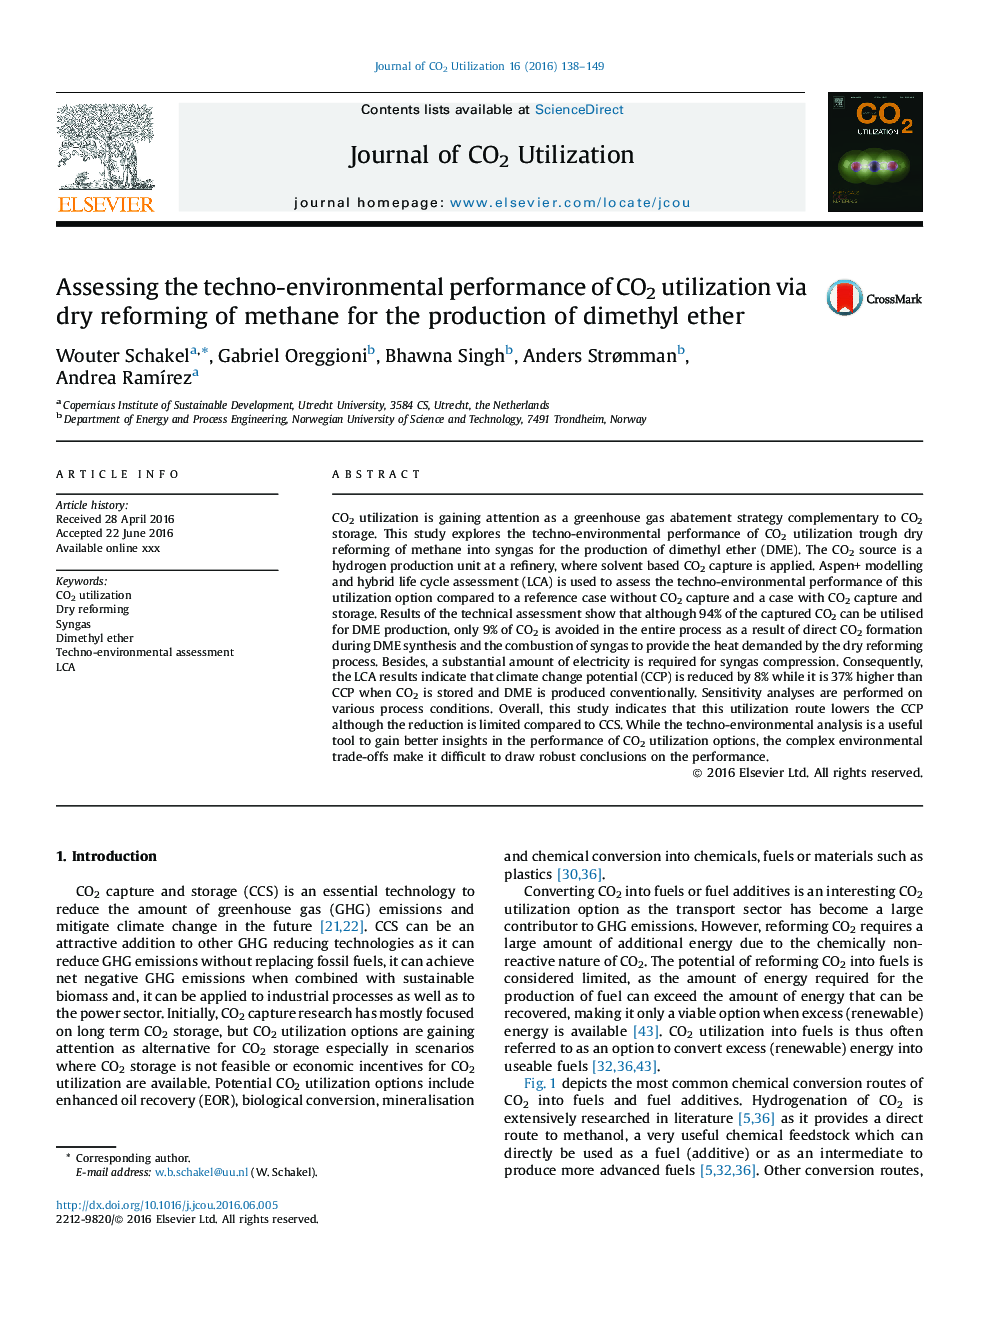 ارزیابی عملکرد تکنو زیست محیطی استفاده از CO2 از طریق رفرمینگ خشک متان برای تولید دی متیل اتر